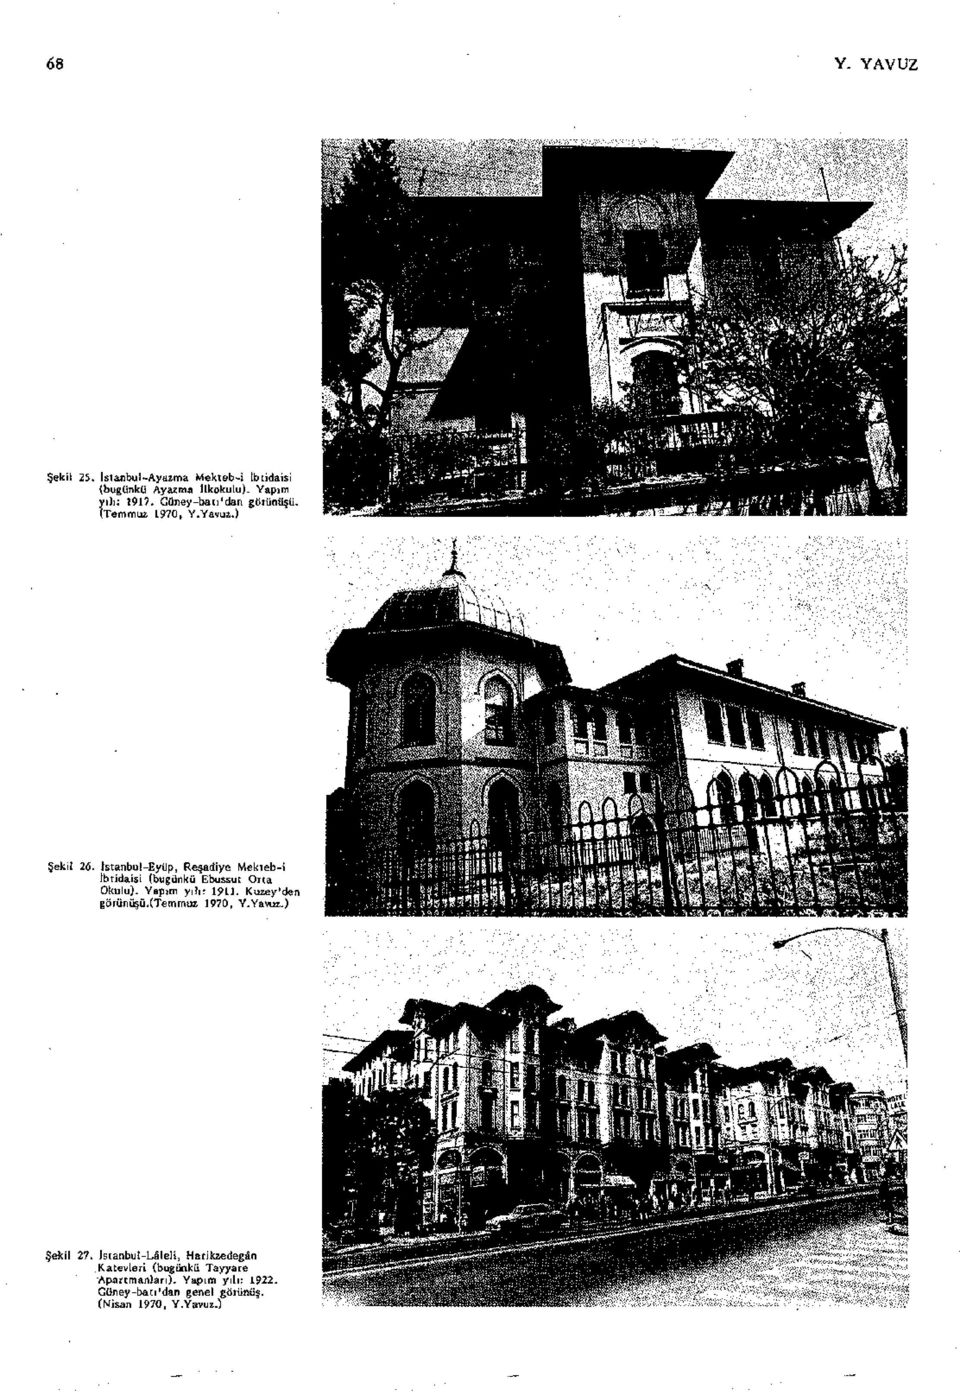 Istanbul-Eyüp, Reşadiye Mekteb-i Ibtidaisi (bugünkü Ebussut Orta Okulu). Yapım yılı: 1911. Kuzey'den görünüşü.